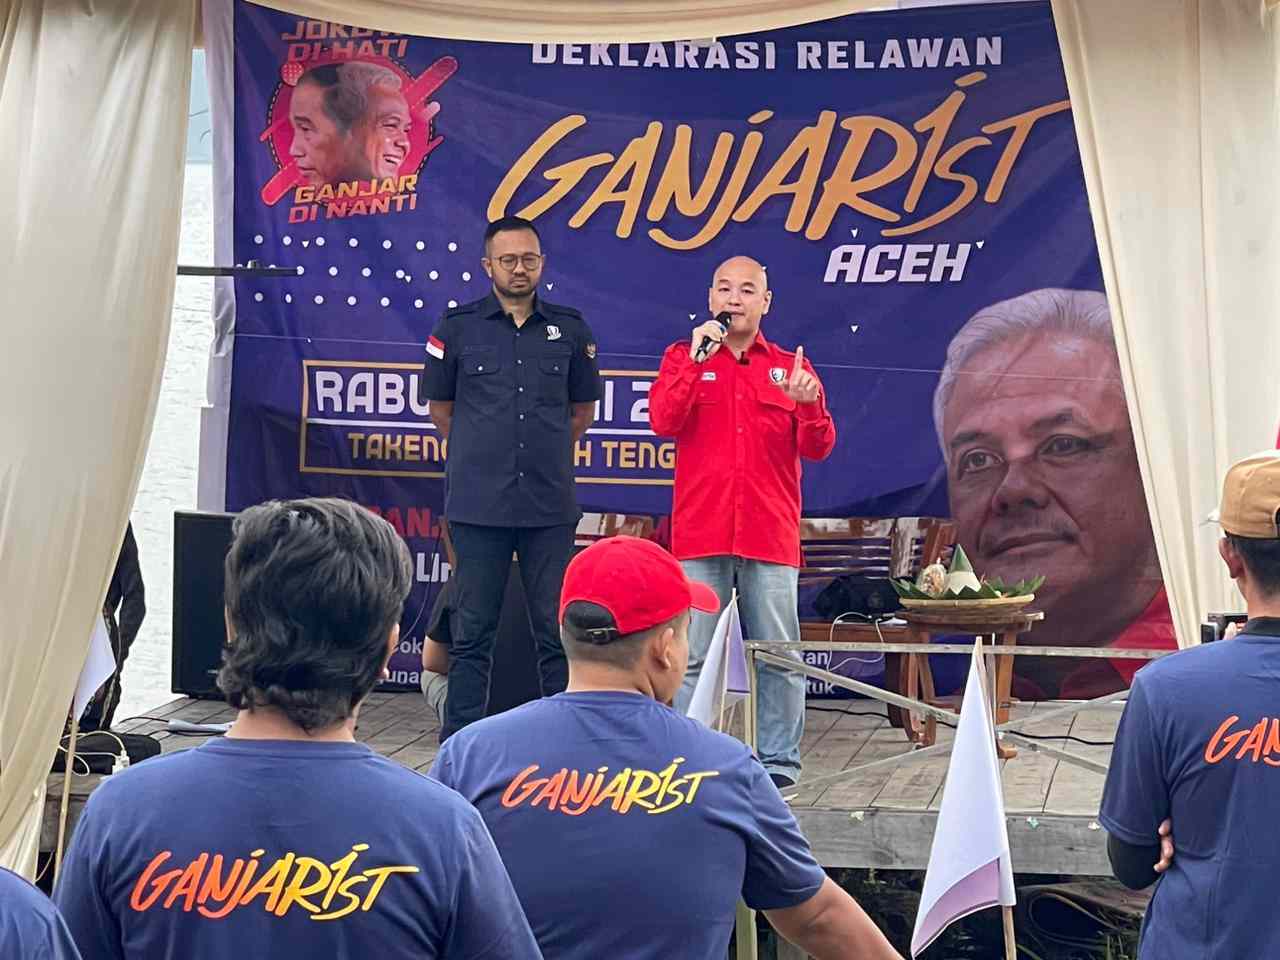 Deklarasi di Kampung Jokowi, Ganjarist Aceh siap menangkan Ganjar sebagai presiden